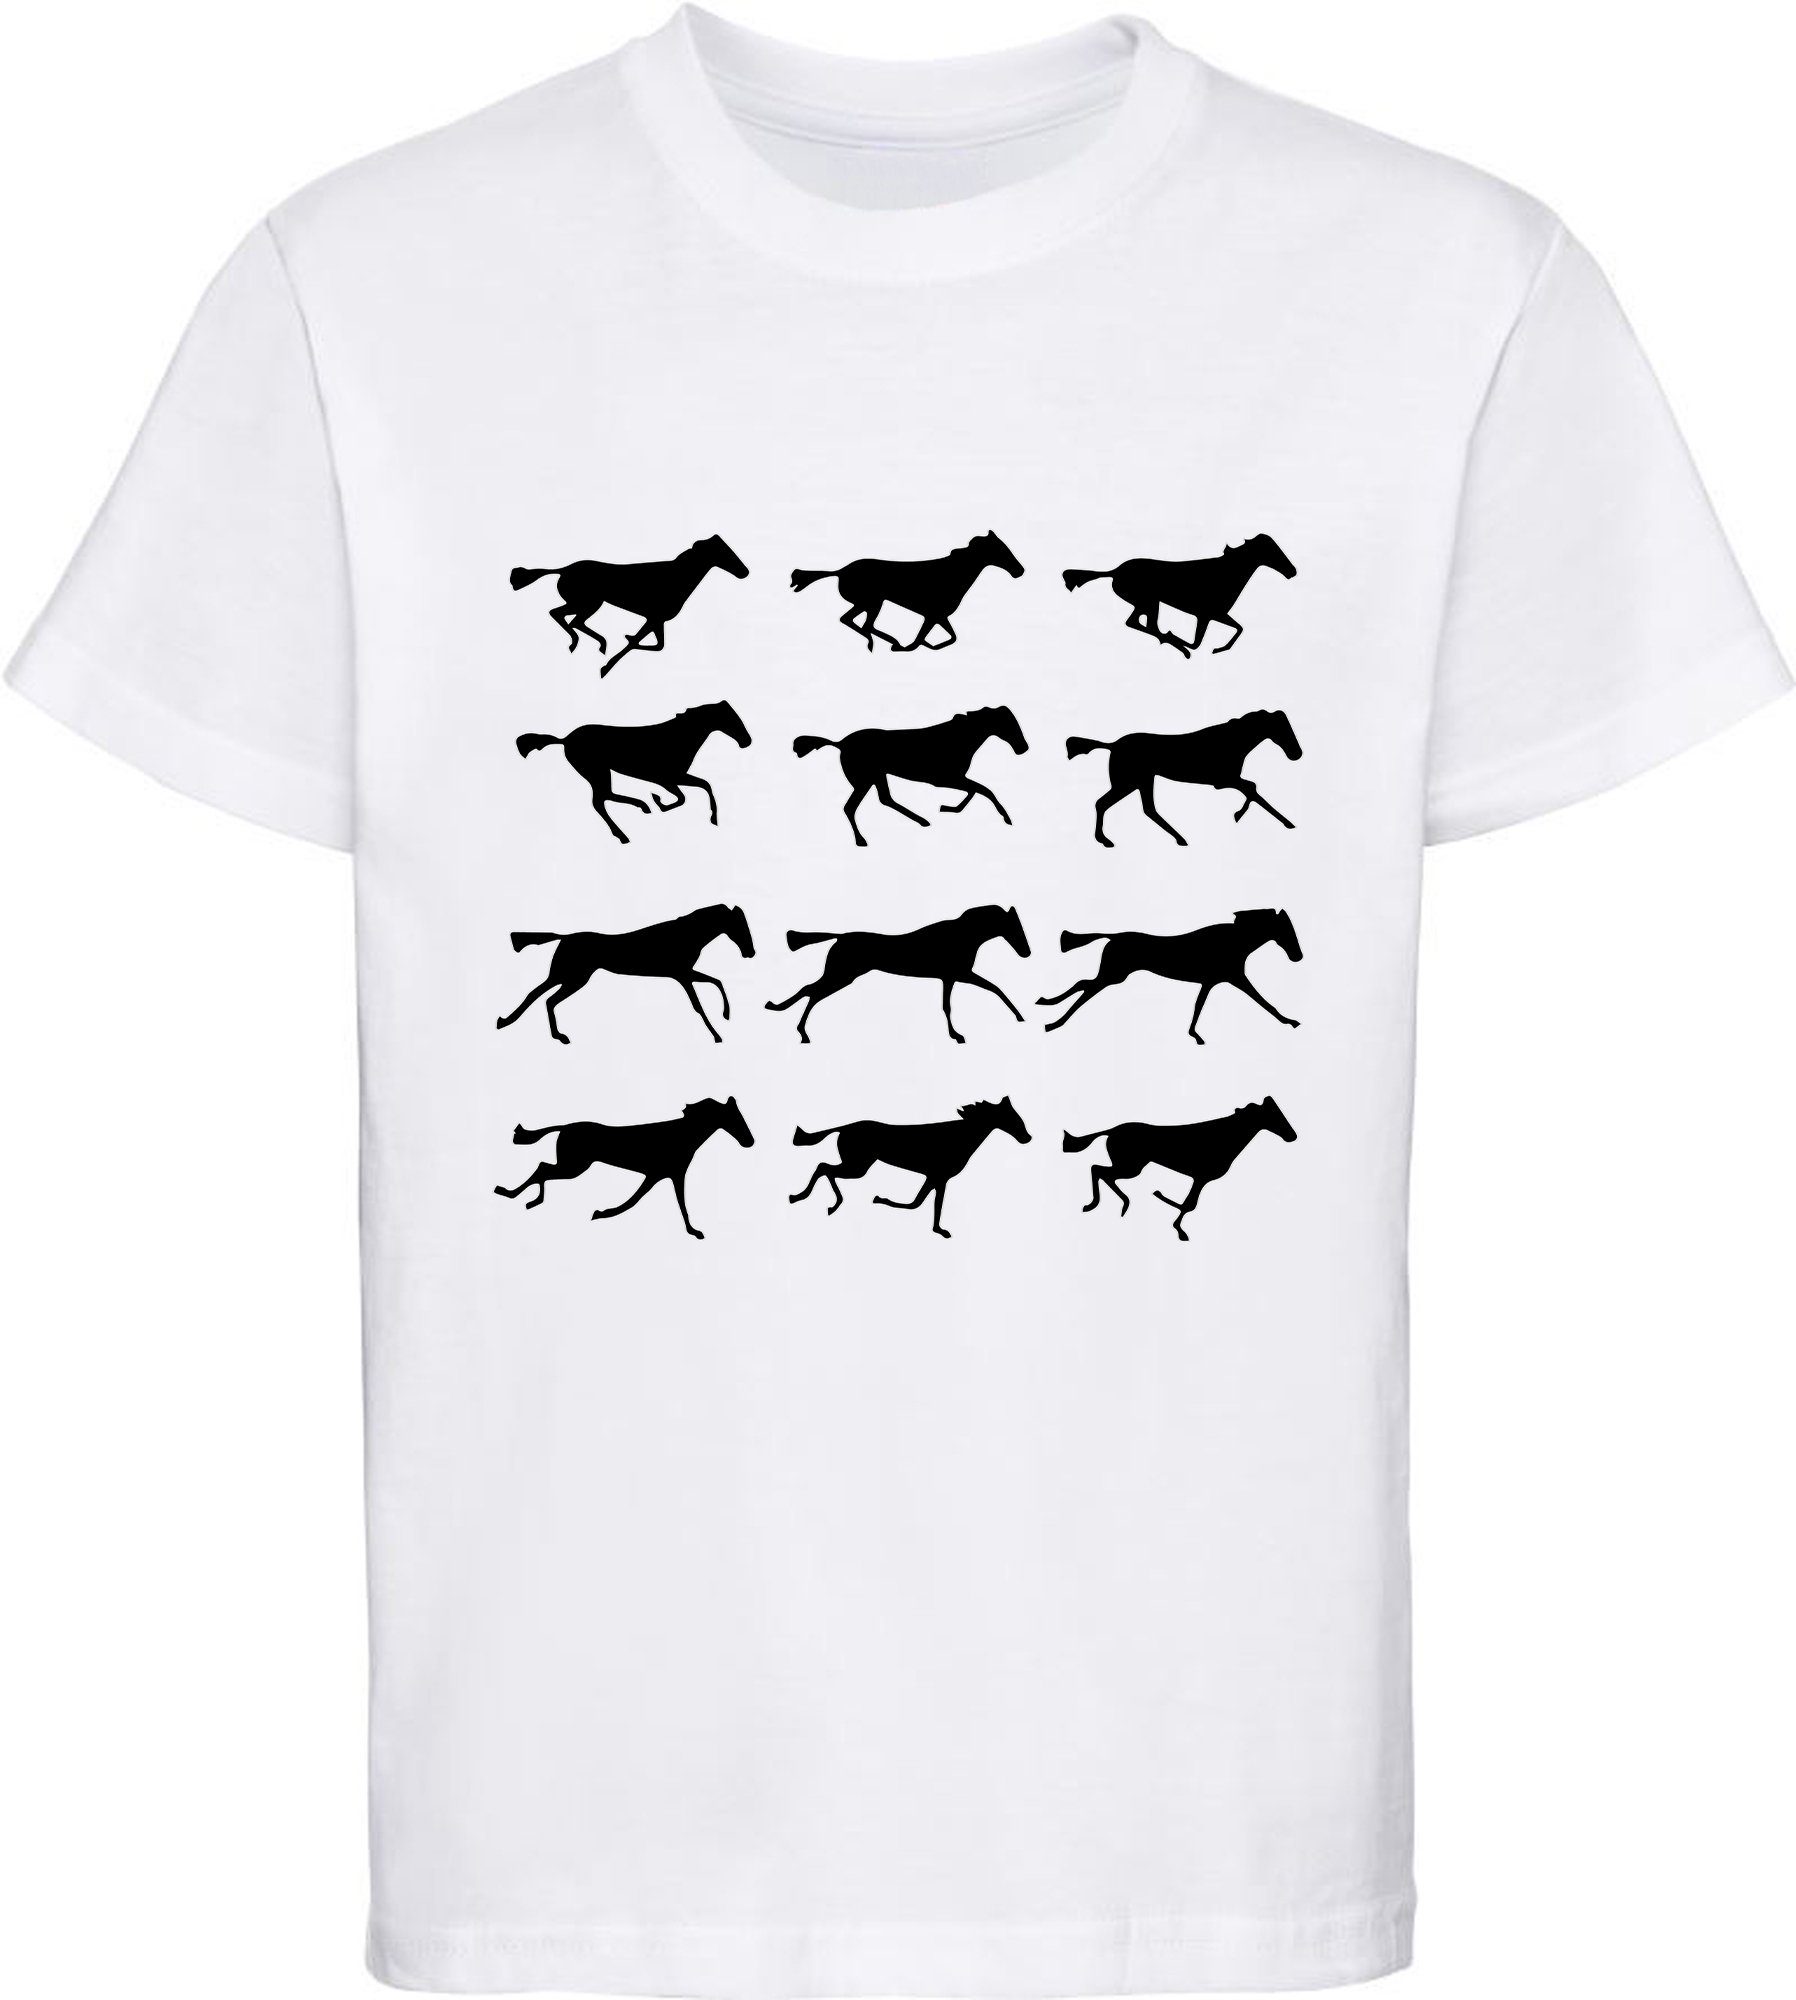 MyDesign24 Print-Shirt bedrucktes Mädchen T-Shirt - Silhouetten von Pferden Baumwollshirt mit Aufdruck, i173 weiss